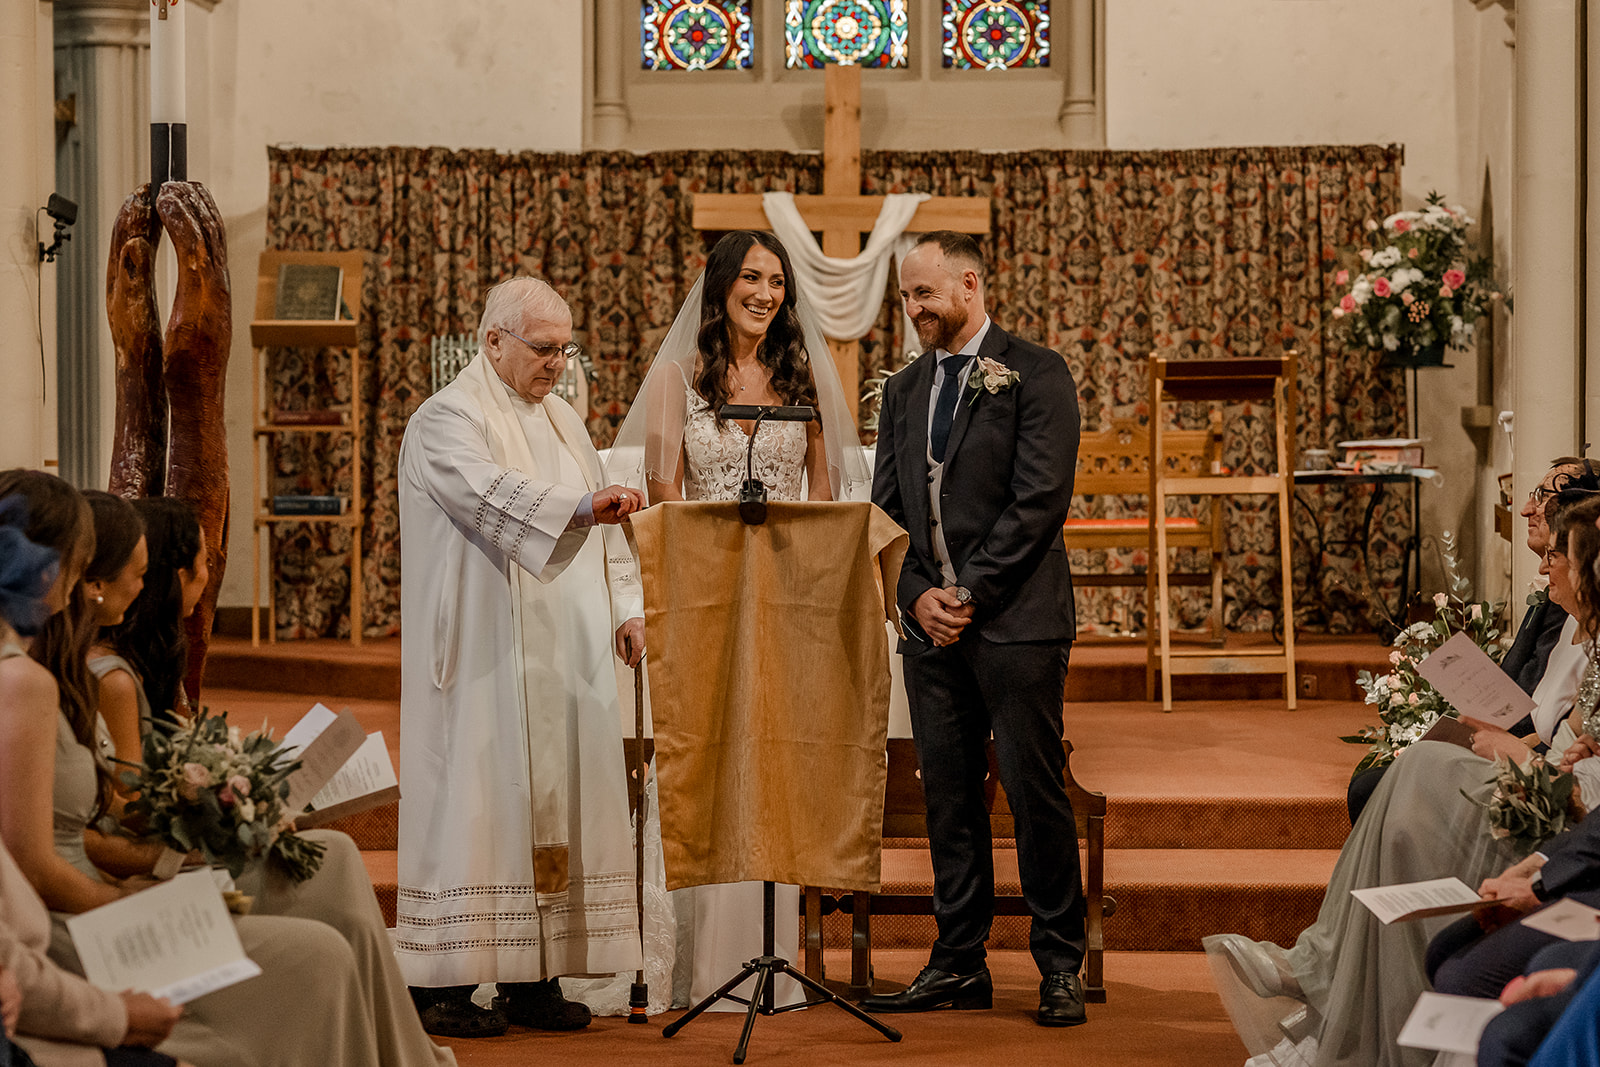 wedding in church at derbyshire